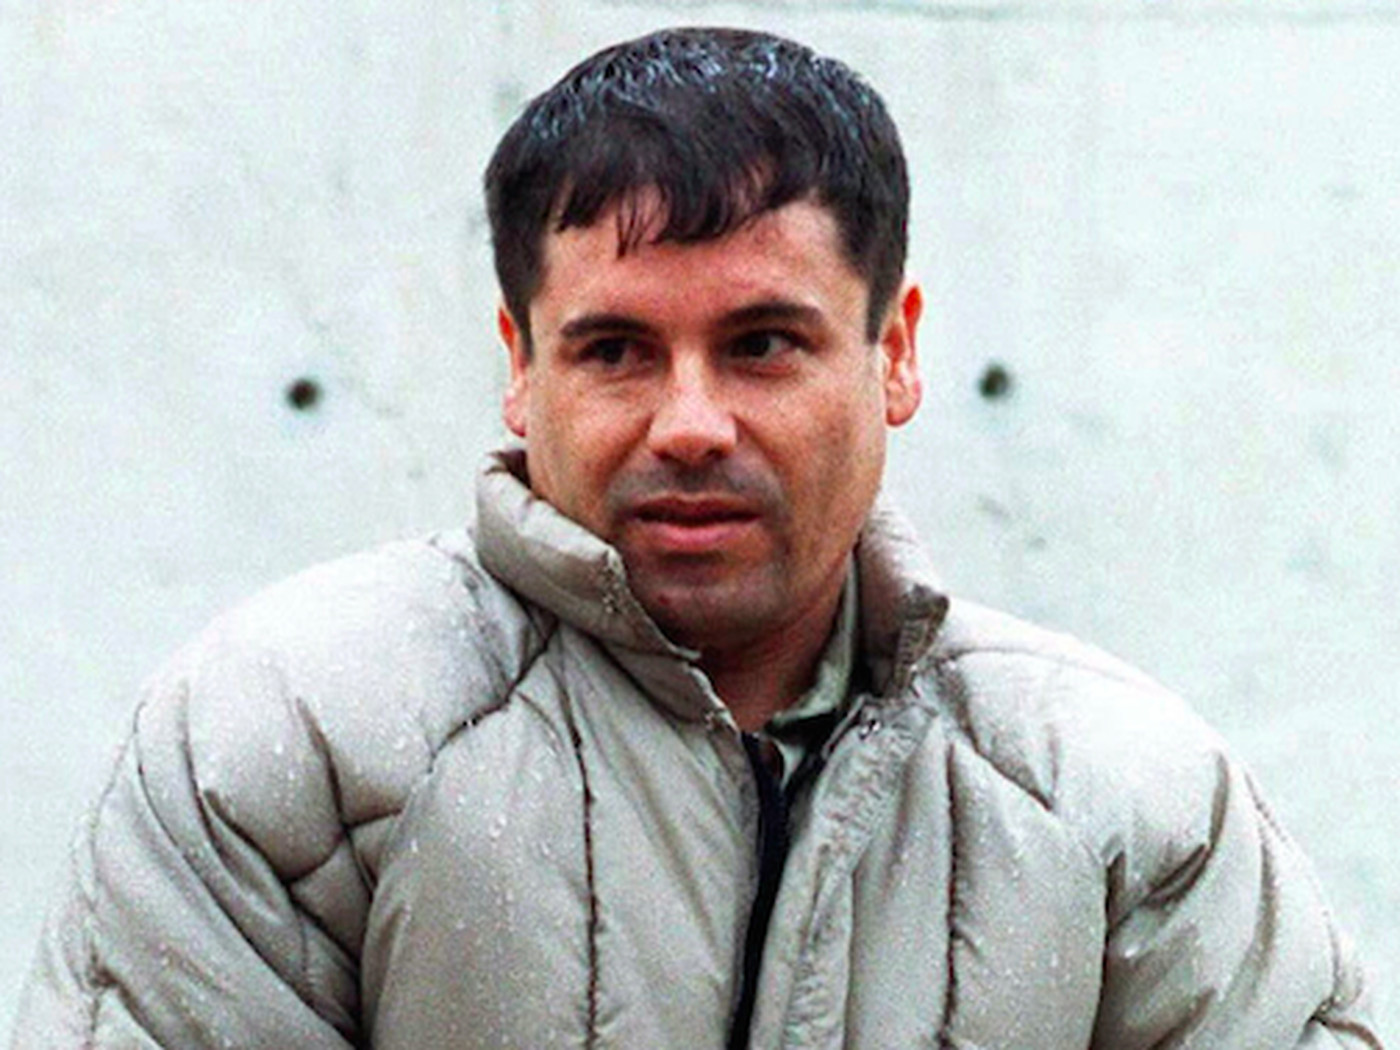 Cartel leader El Chapo Guzmán's prison break is even worse than it seems